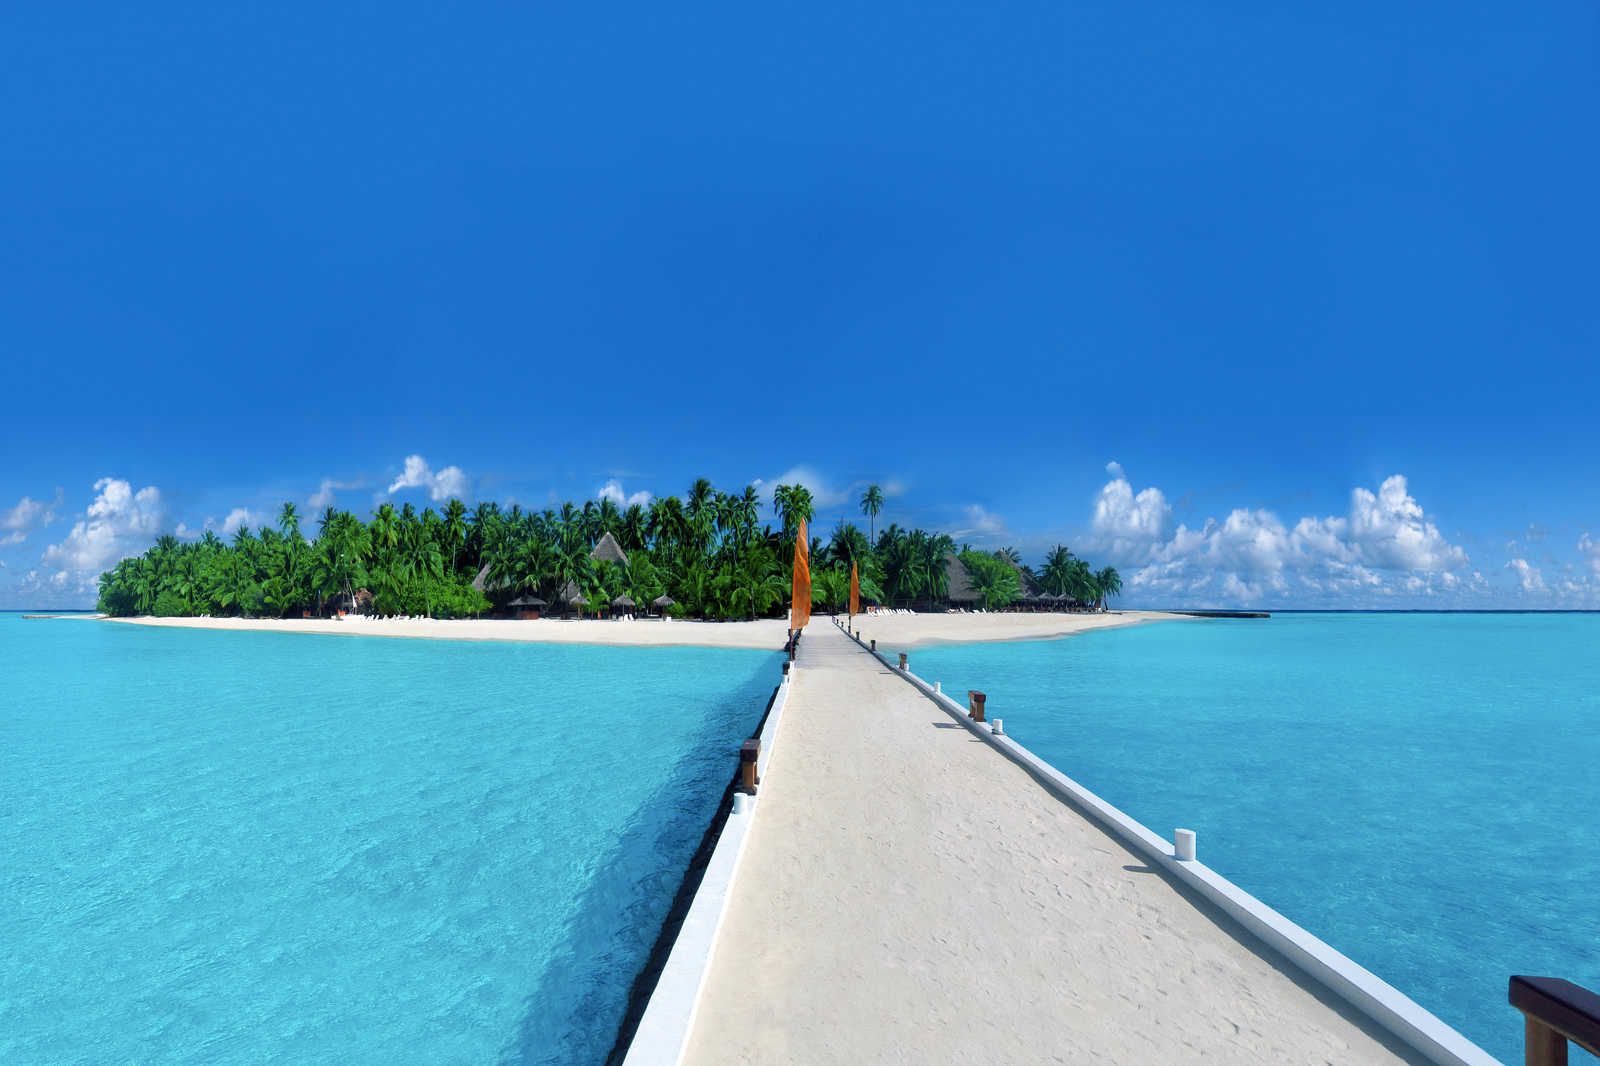             Quadro su tela Isola con pontile sulla spiaggia - 0,90 m x 0,60 m
        